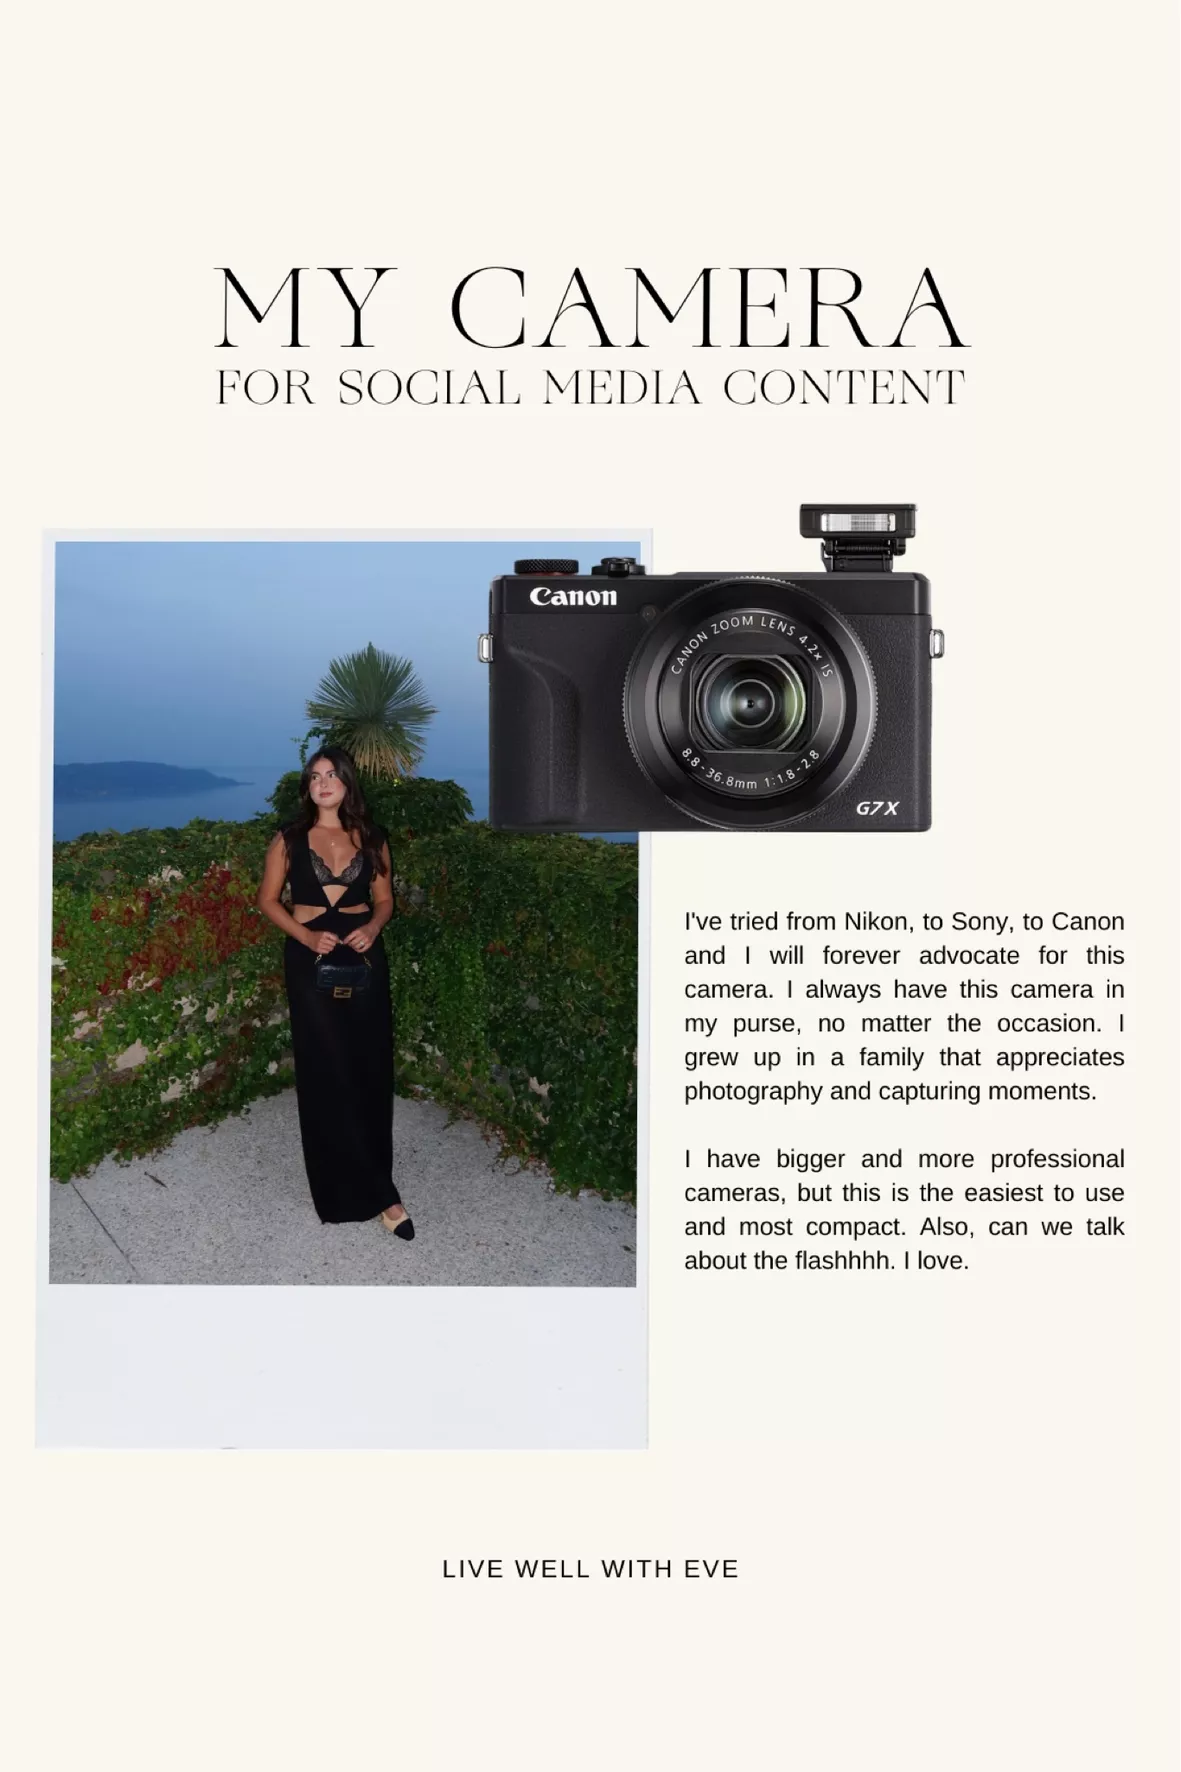 Canon Powershot G7 X Mark III Video Creator Kit — Pro Photo Supply